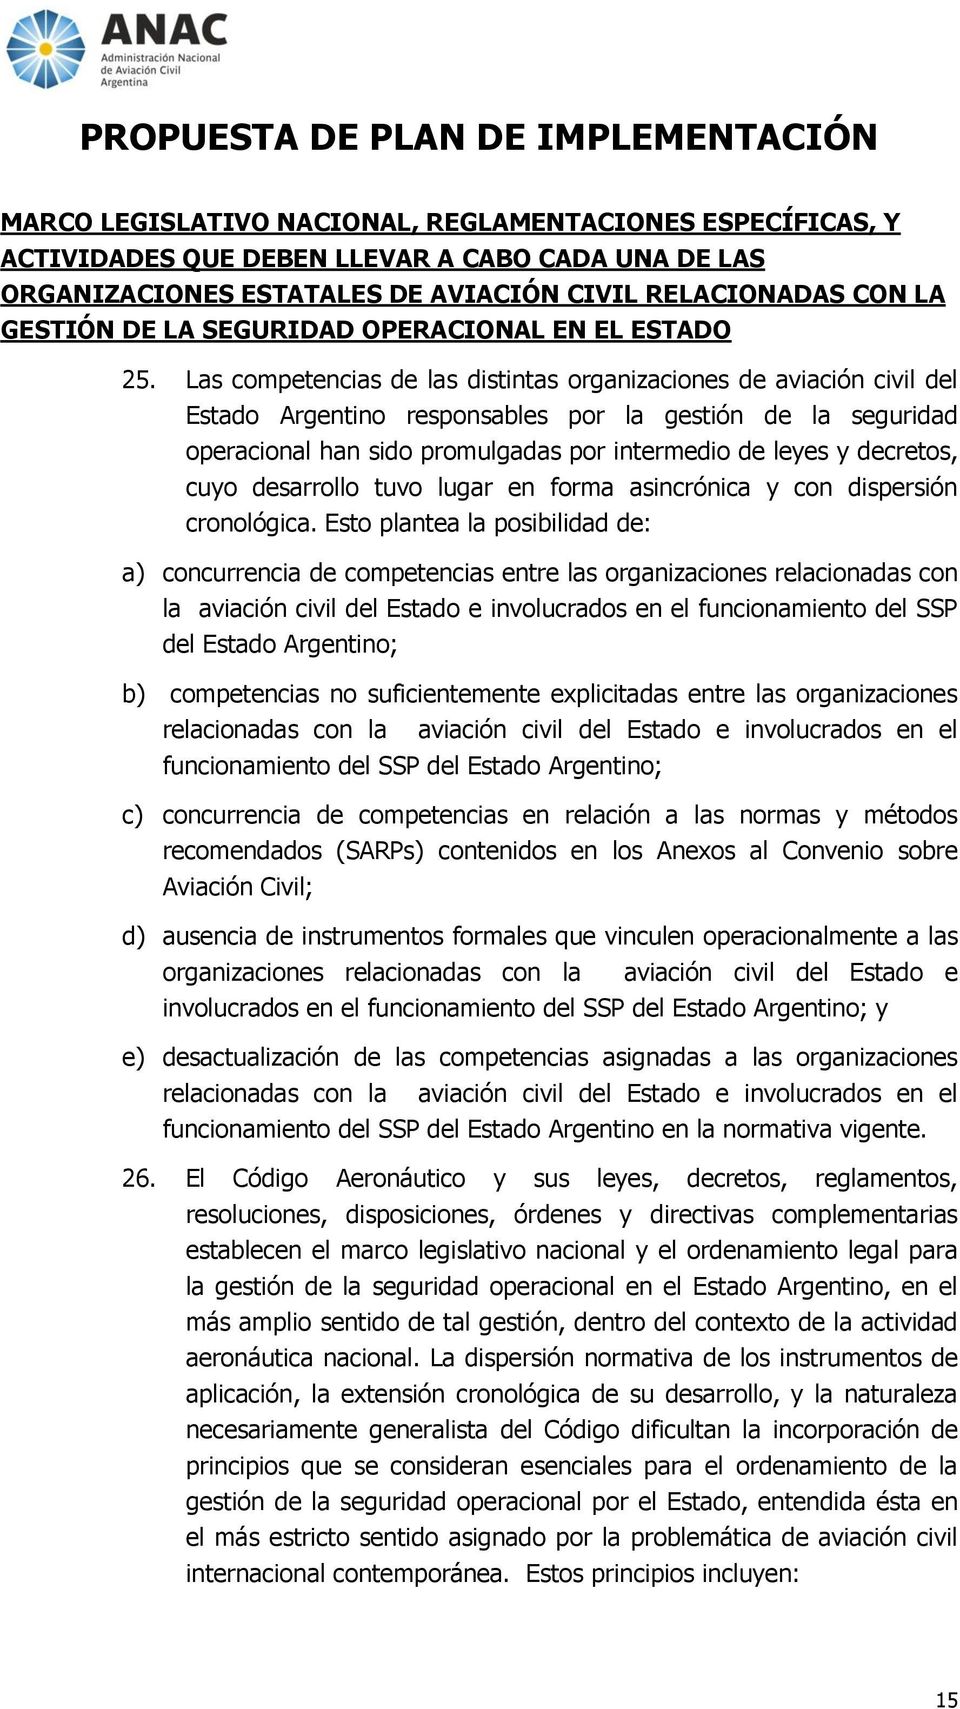 Las competencias de las distintas organizaciones de aviación civil del Estado Argentino responsables por la gestión de la seguridad operacional han sido promulgadas por intermedio de leyes y